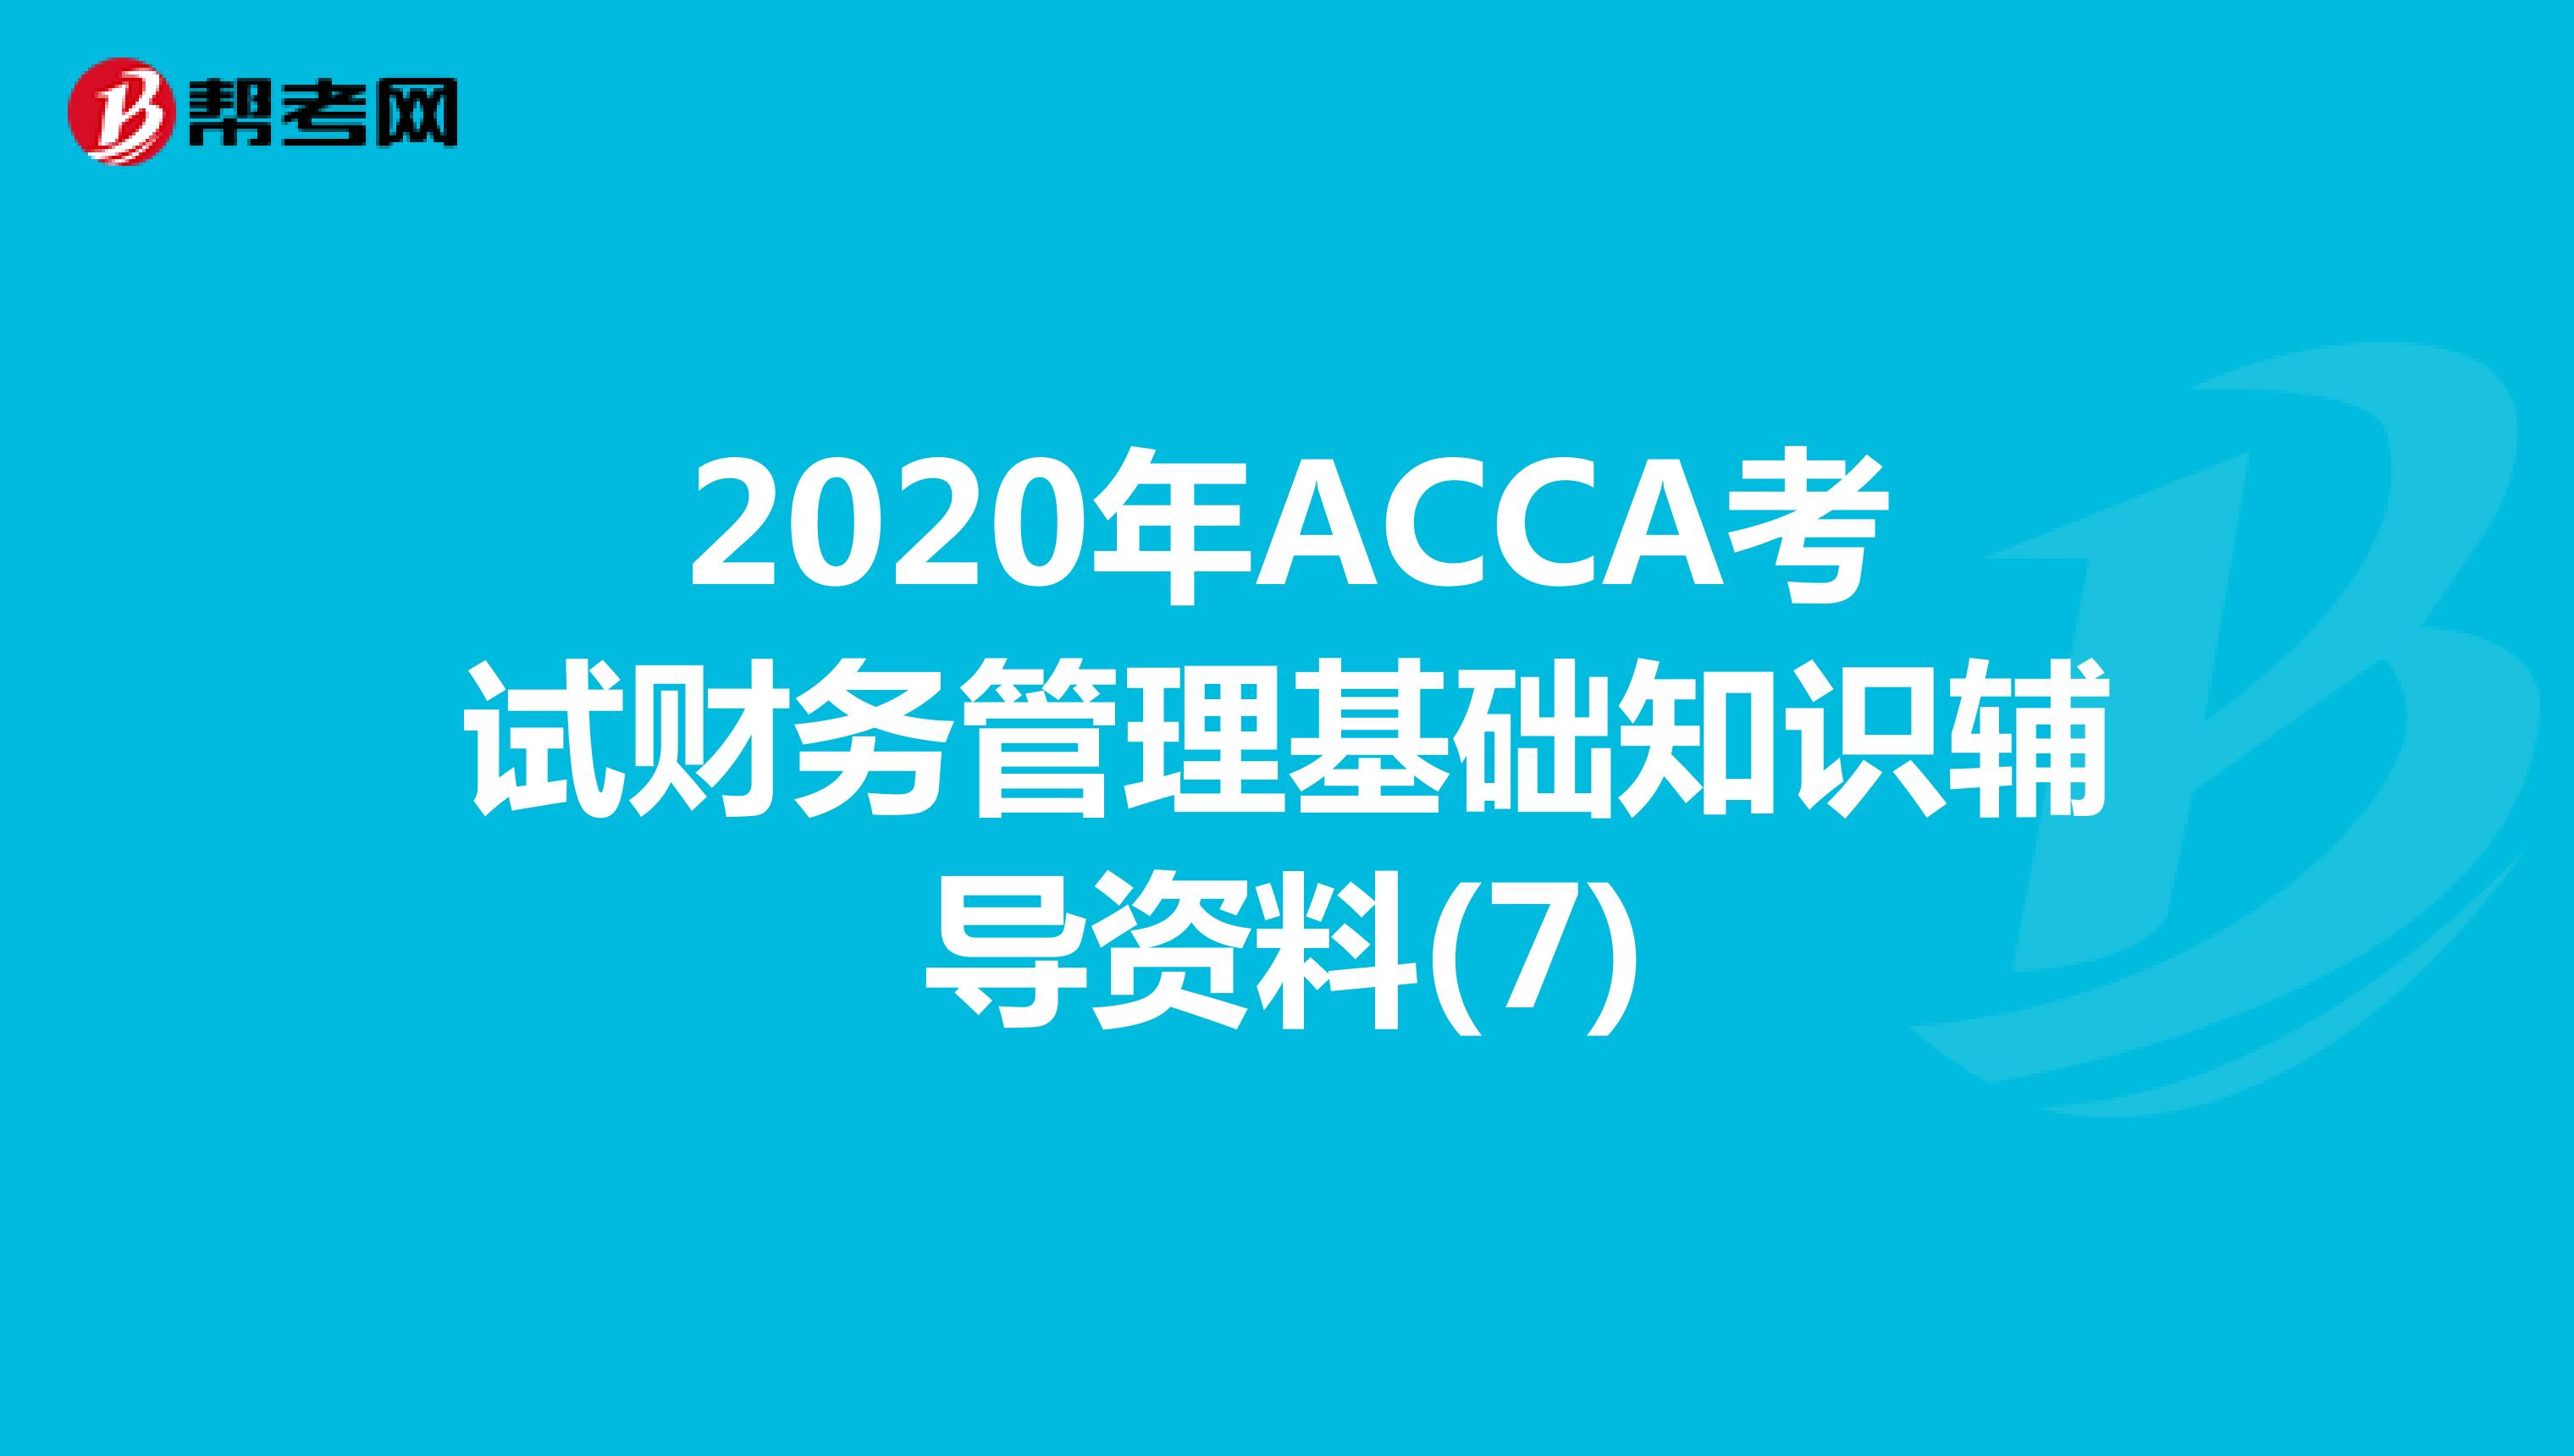 2020年ACCA考试财务管理基础知识辅导资料(7)